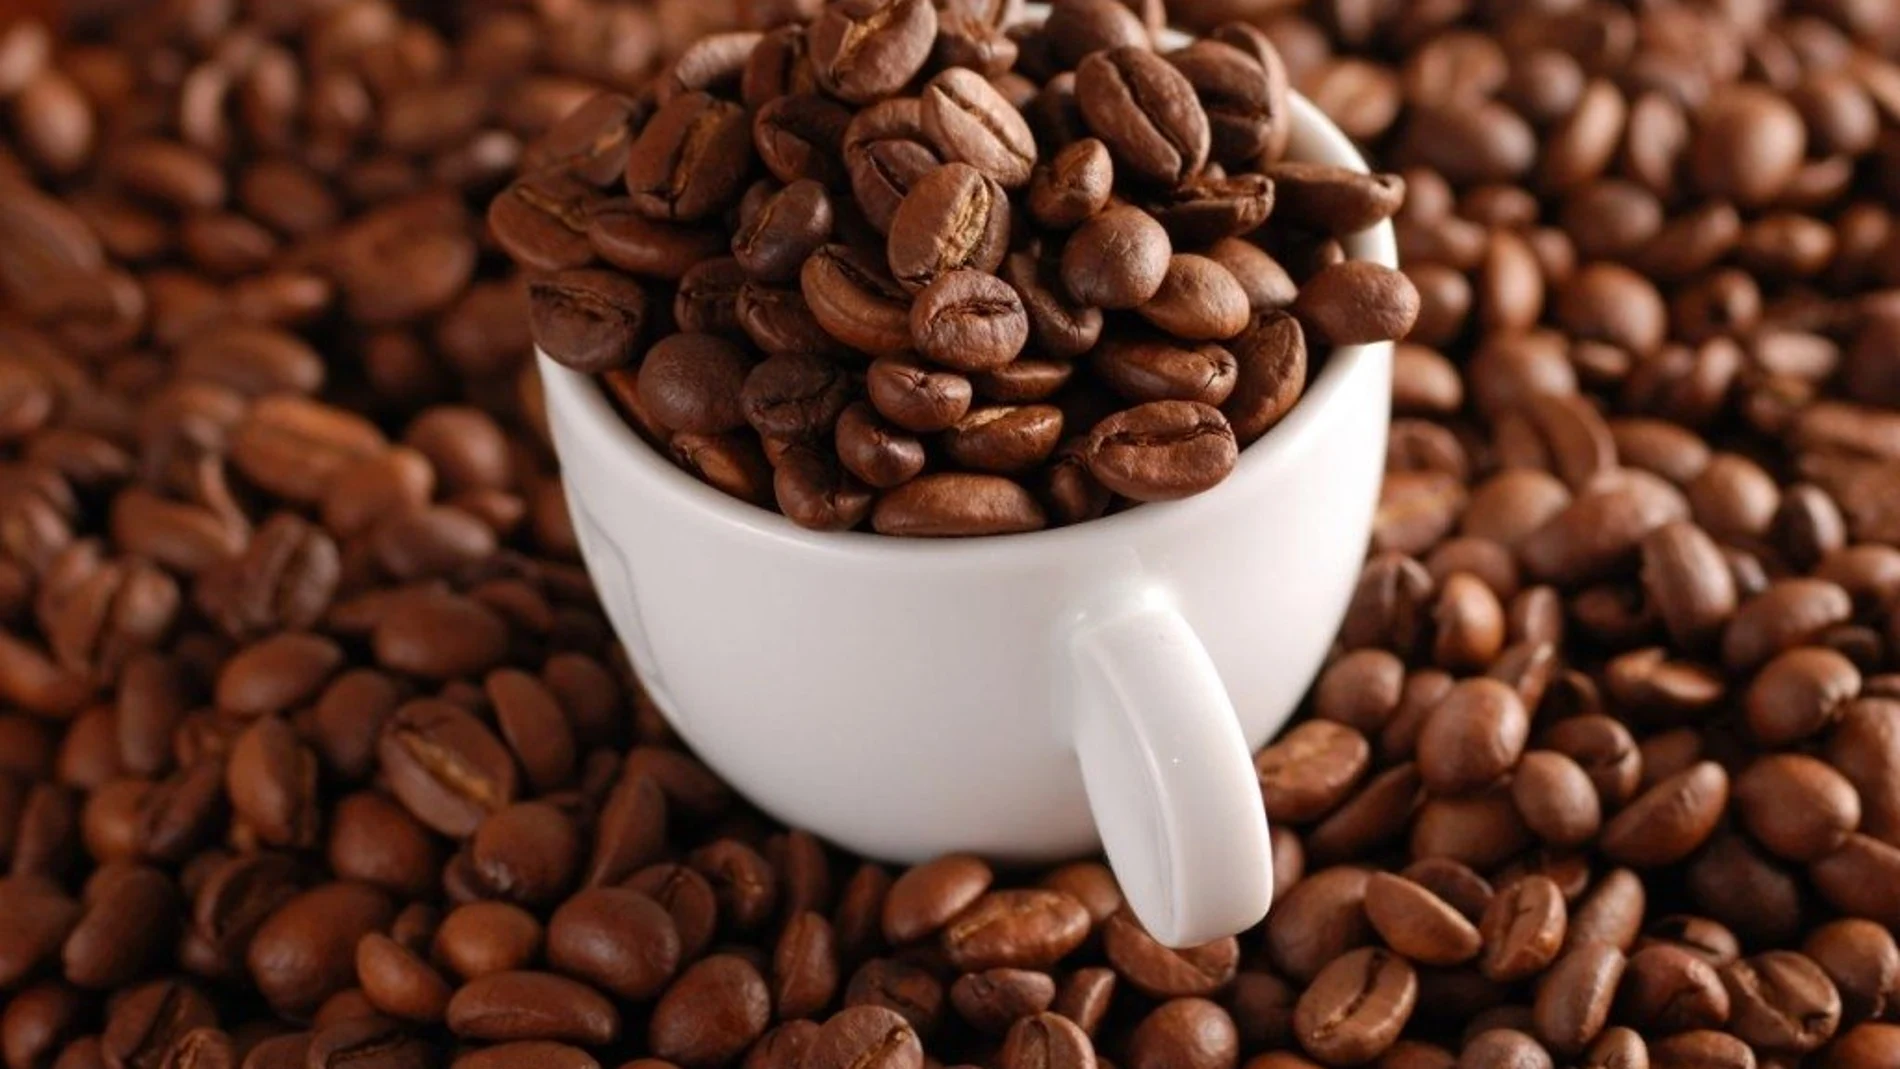 El consumo de café reduce el riesgo de cáncer colorrectal hasta en un 54%